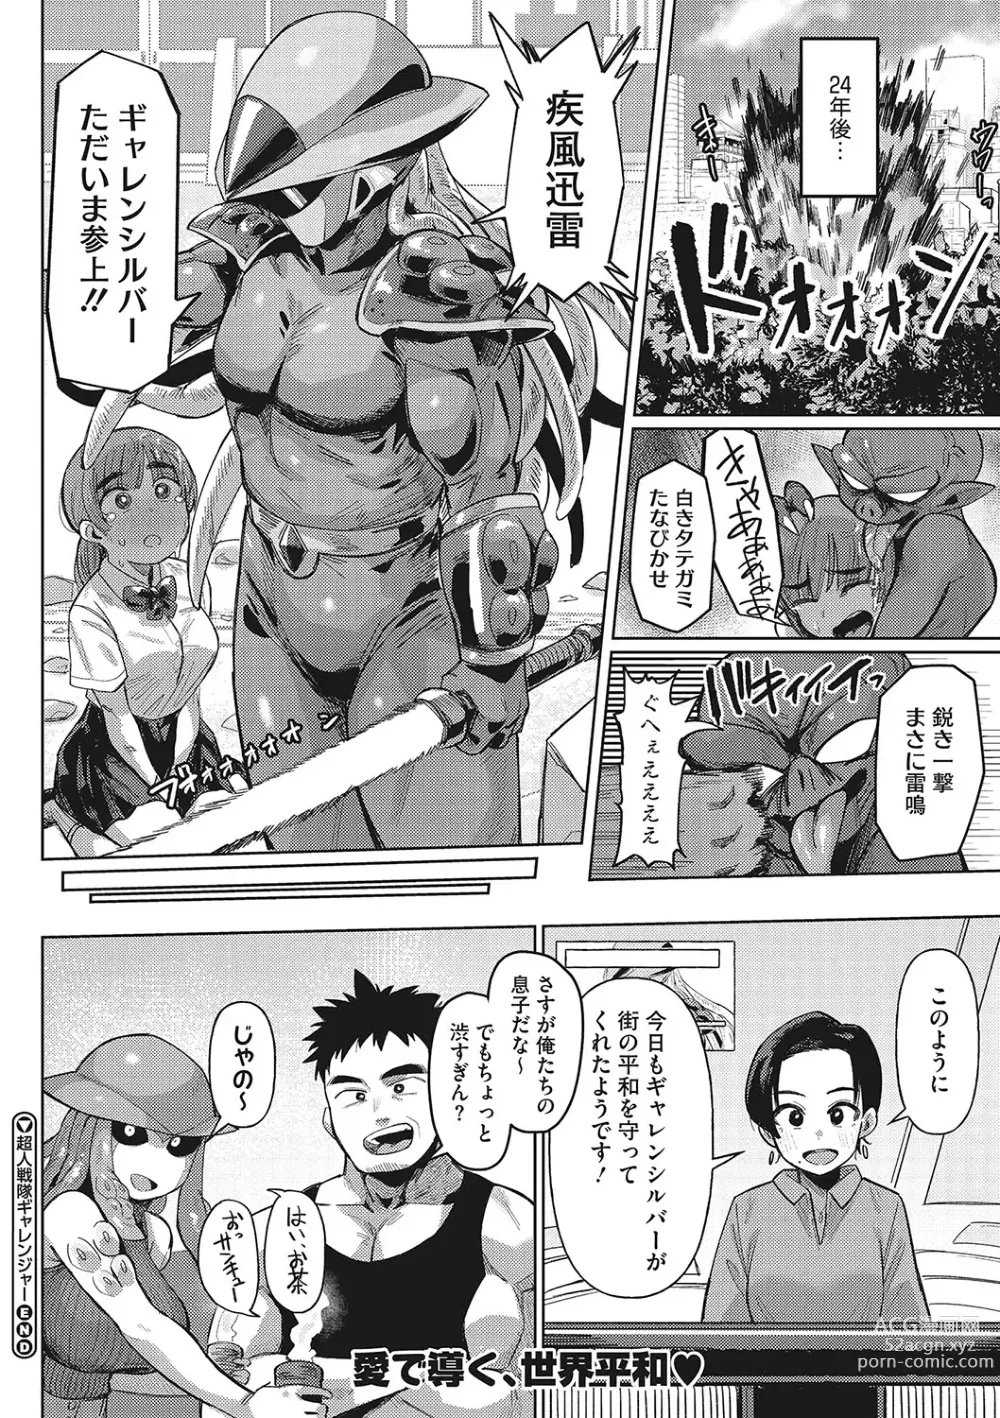 Page 25 of manga Jingai The Universe